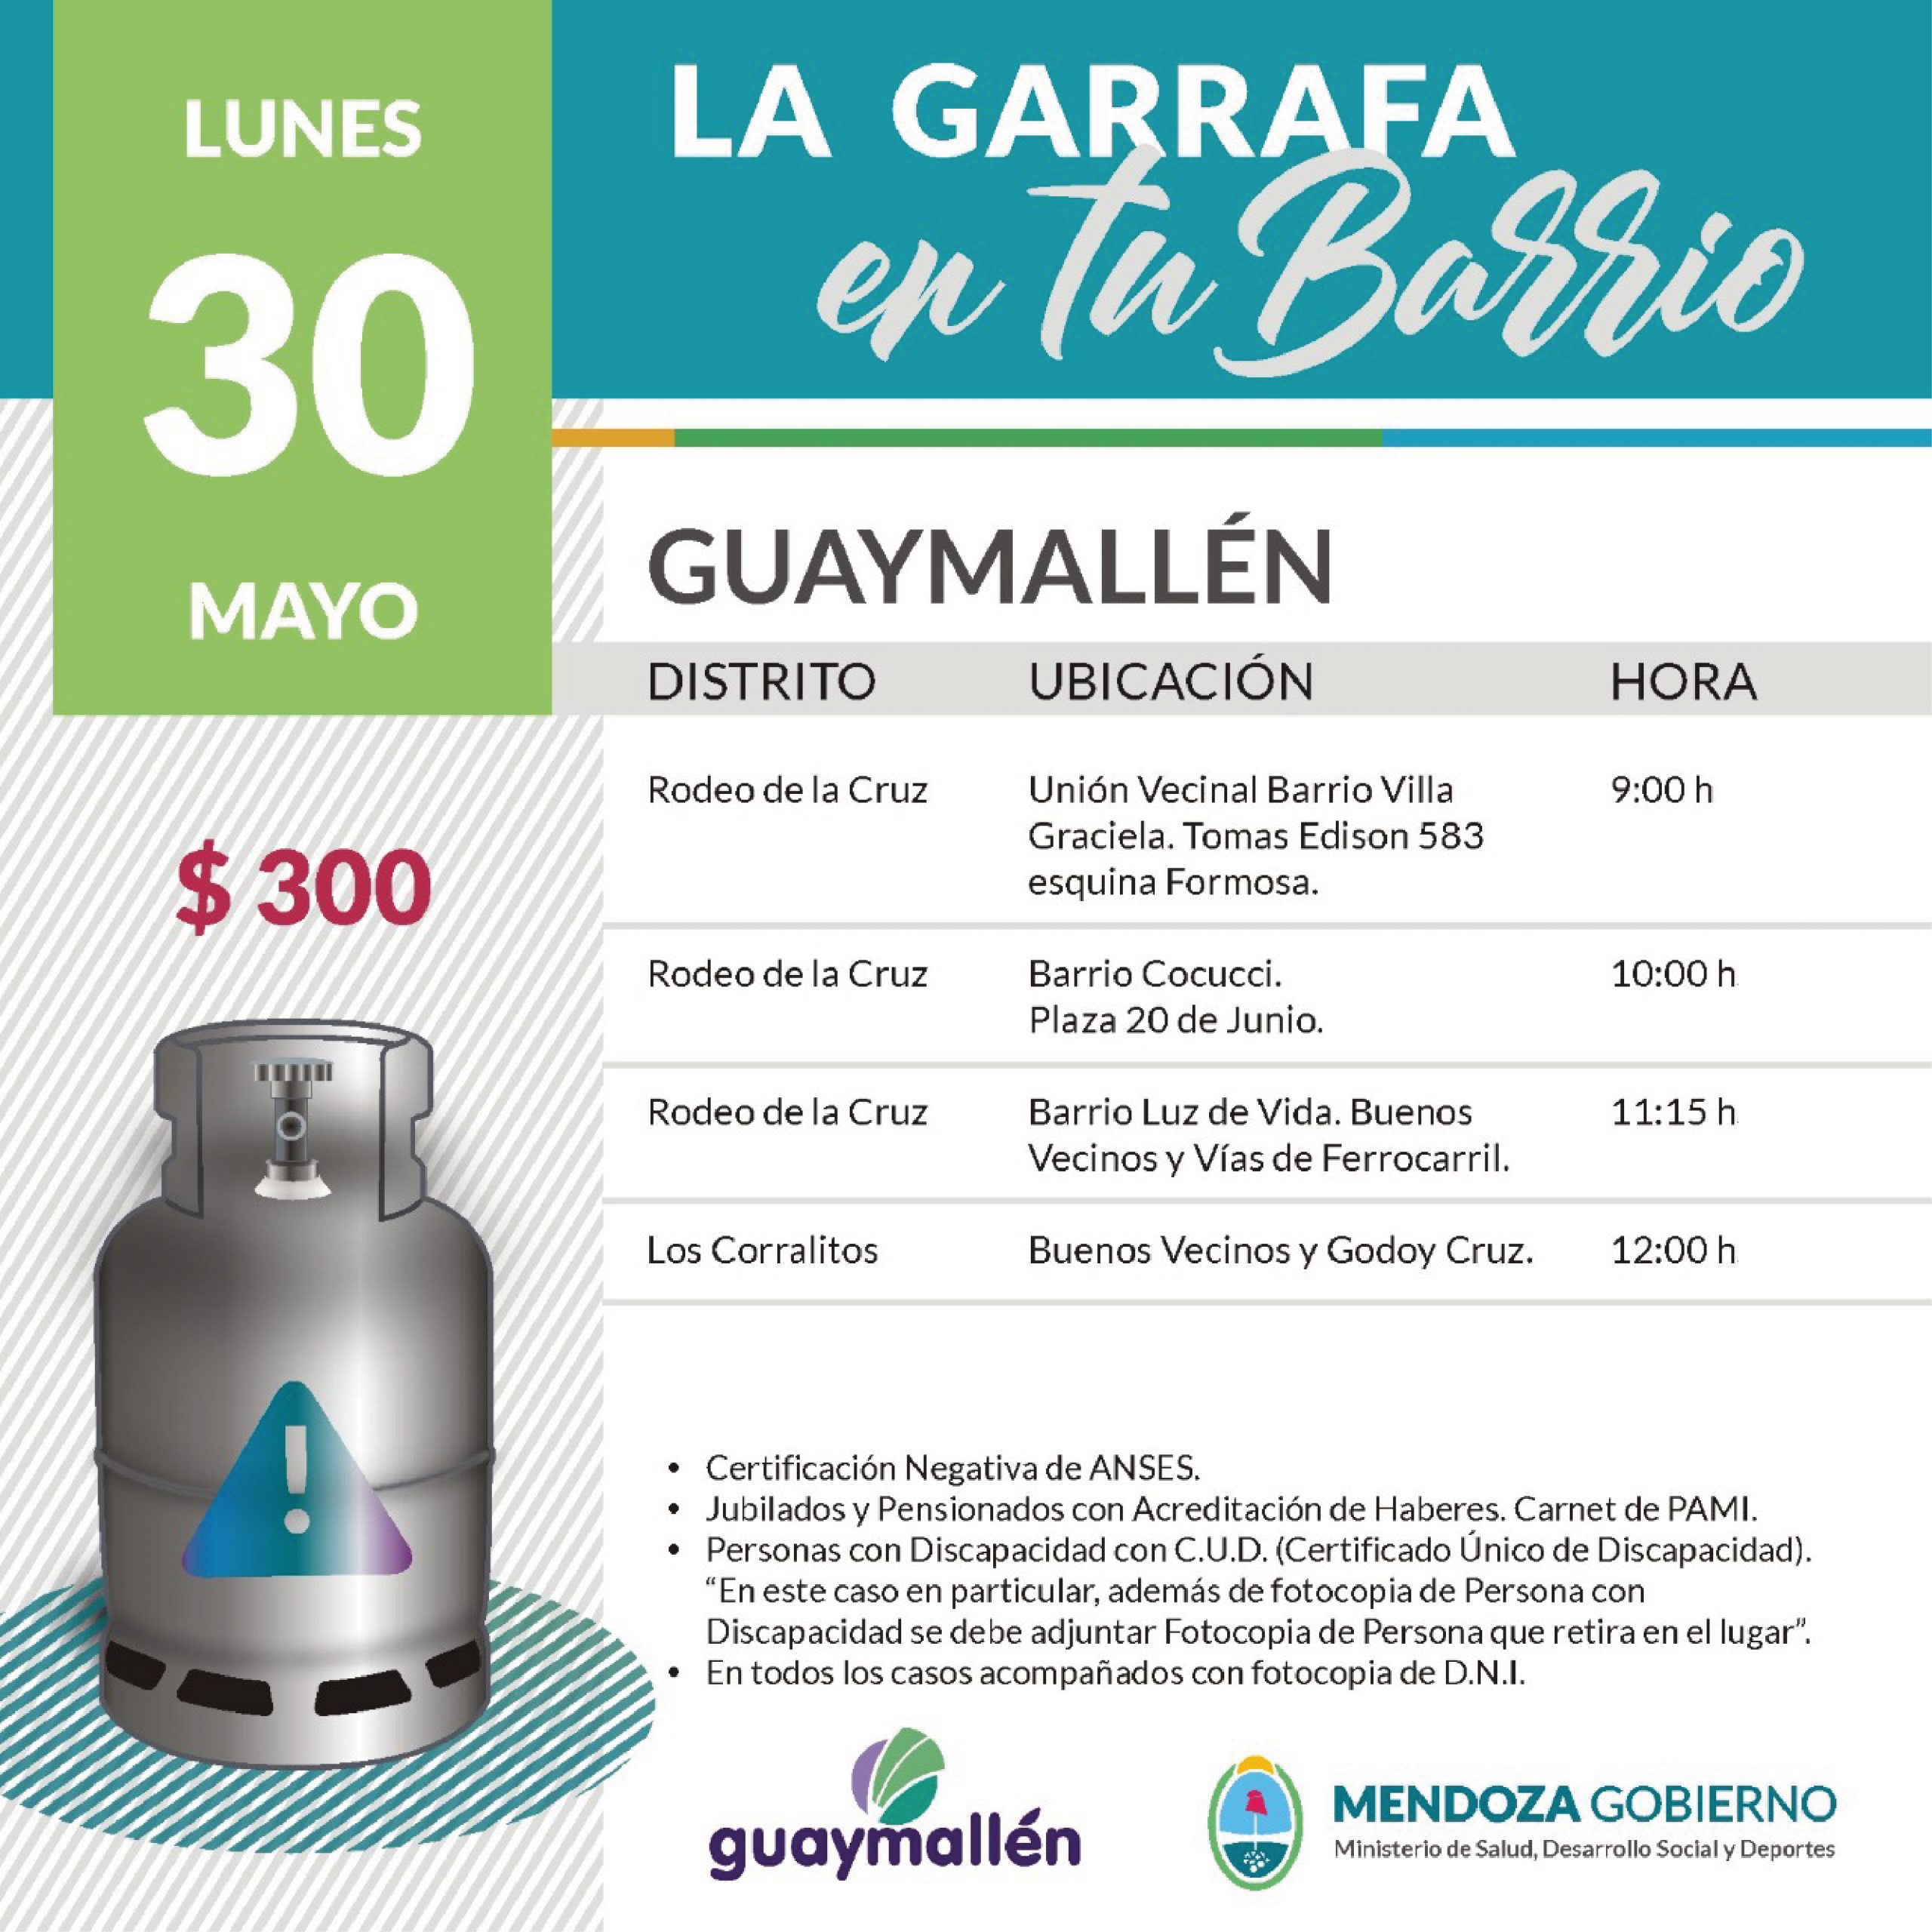 La Garrafa en tu Barrio con subsidio provincial. 30 de mayo.